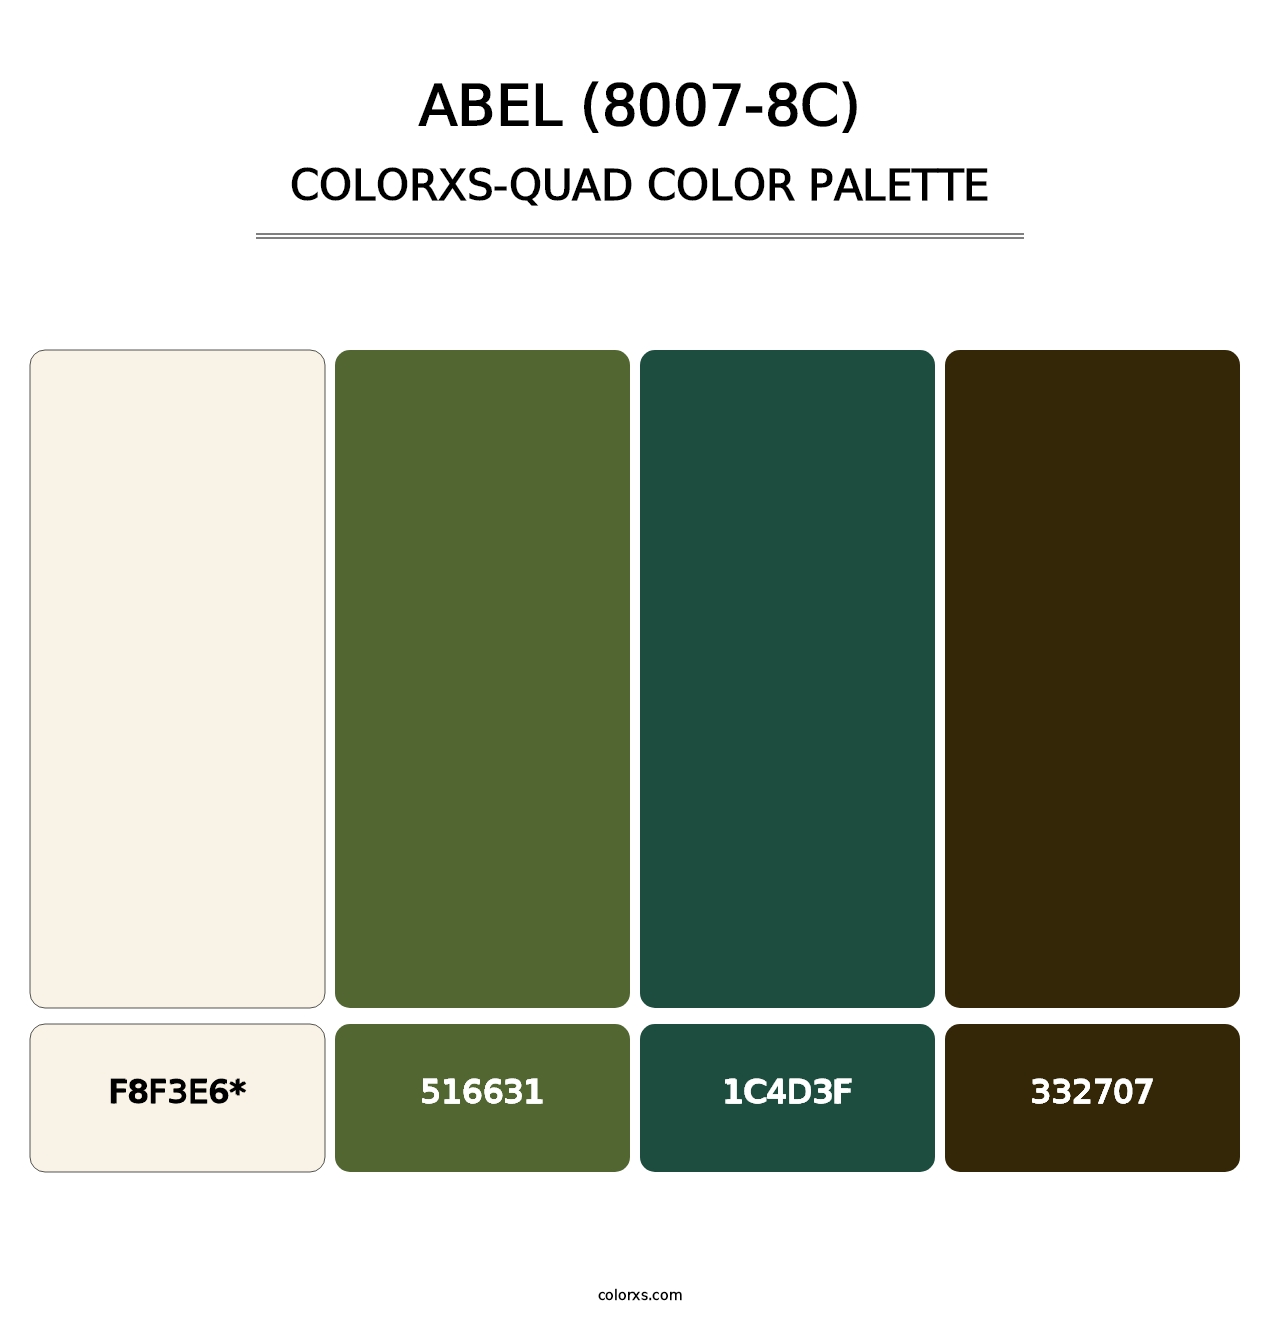 Abel (8007-8C) - Colorxs Quad Palette